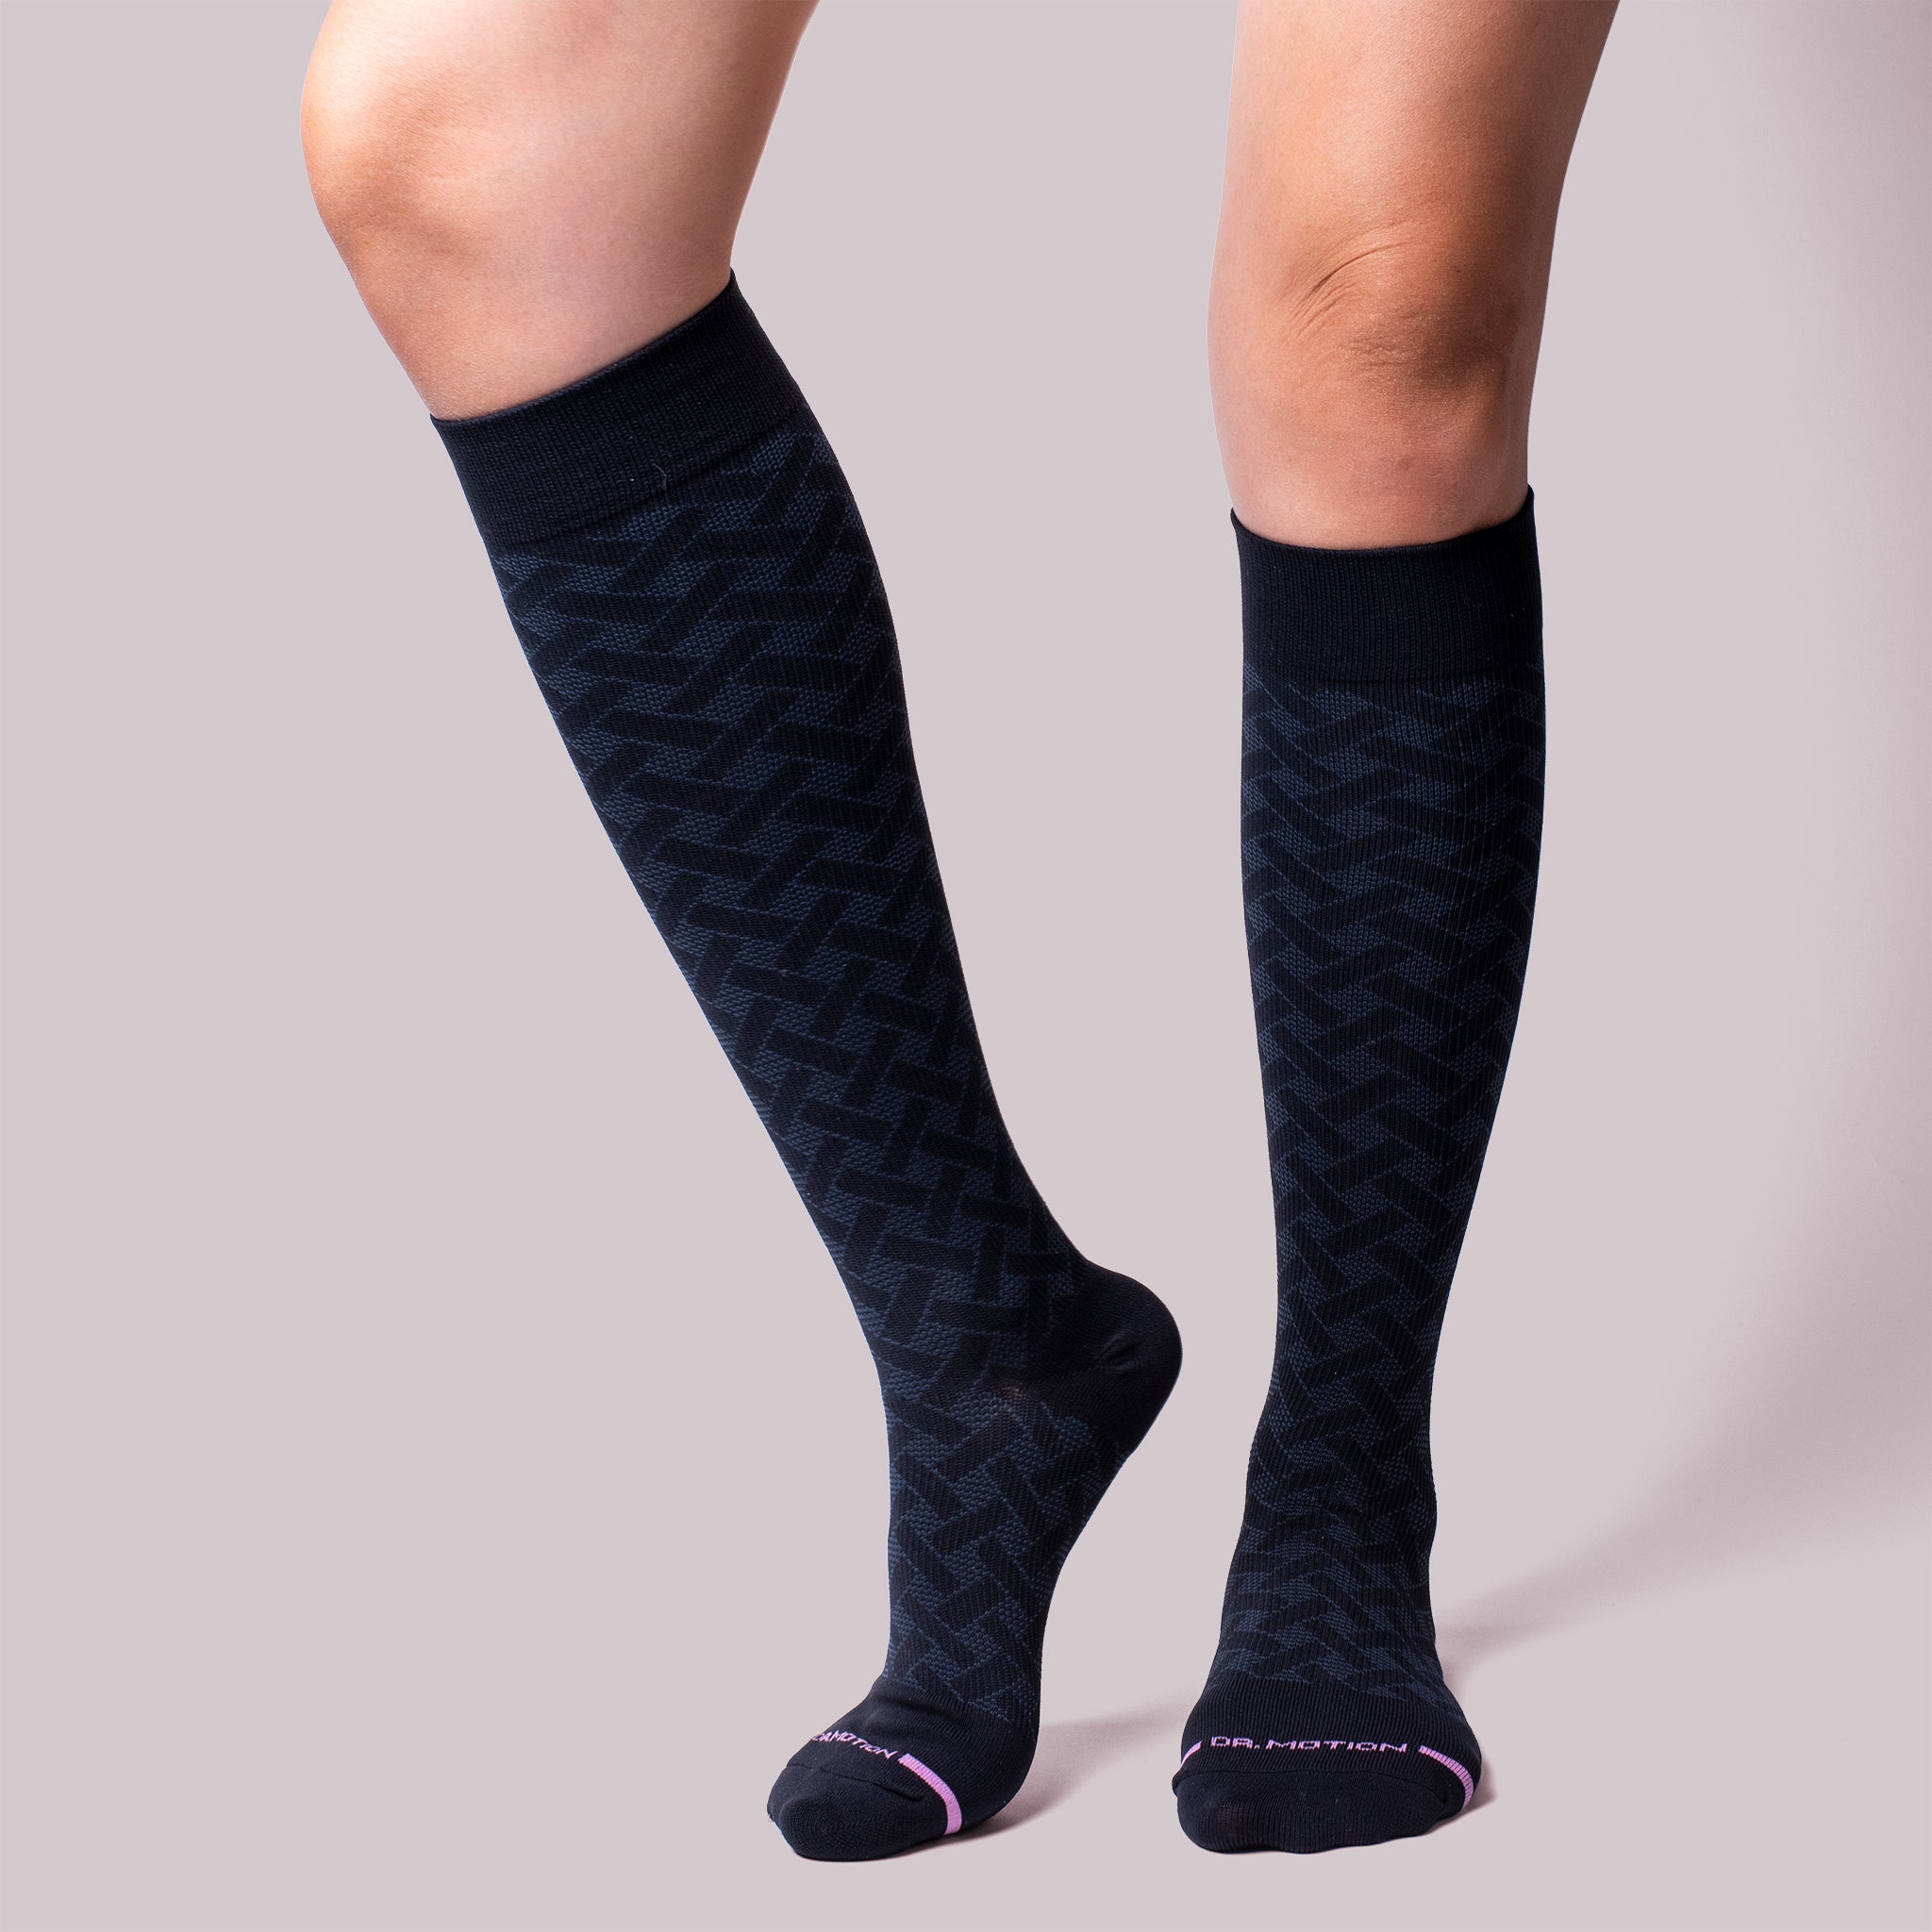 Basket Weave | Knee-High Compression Socks For Women